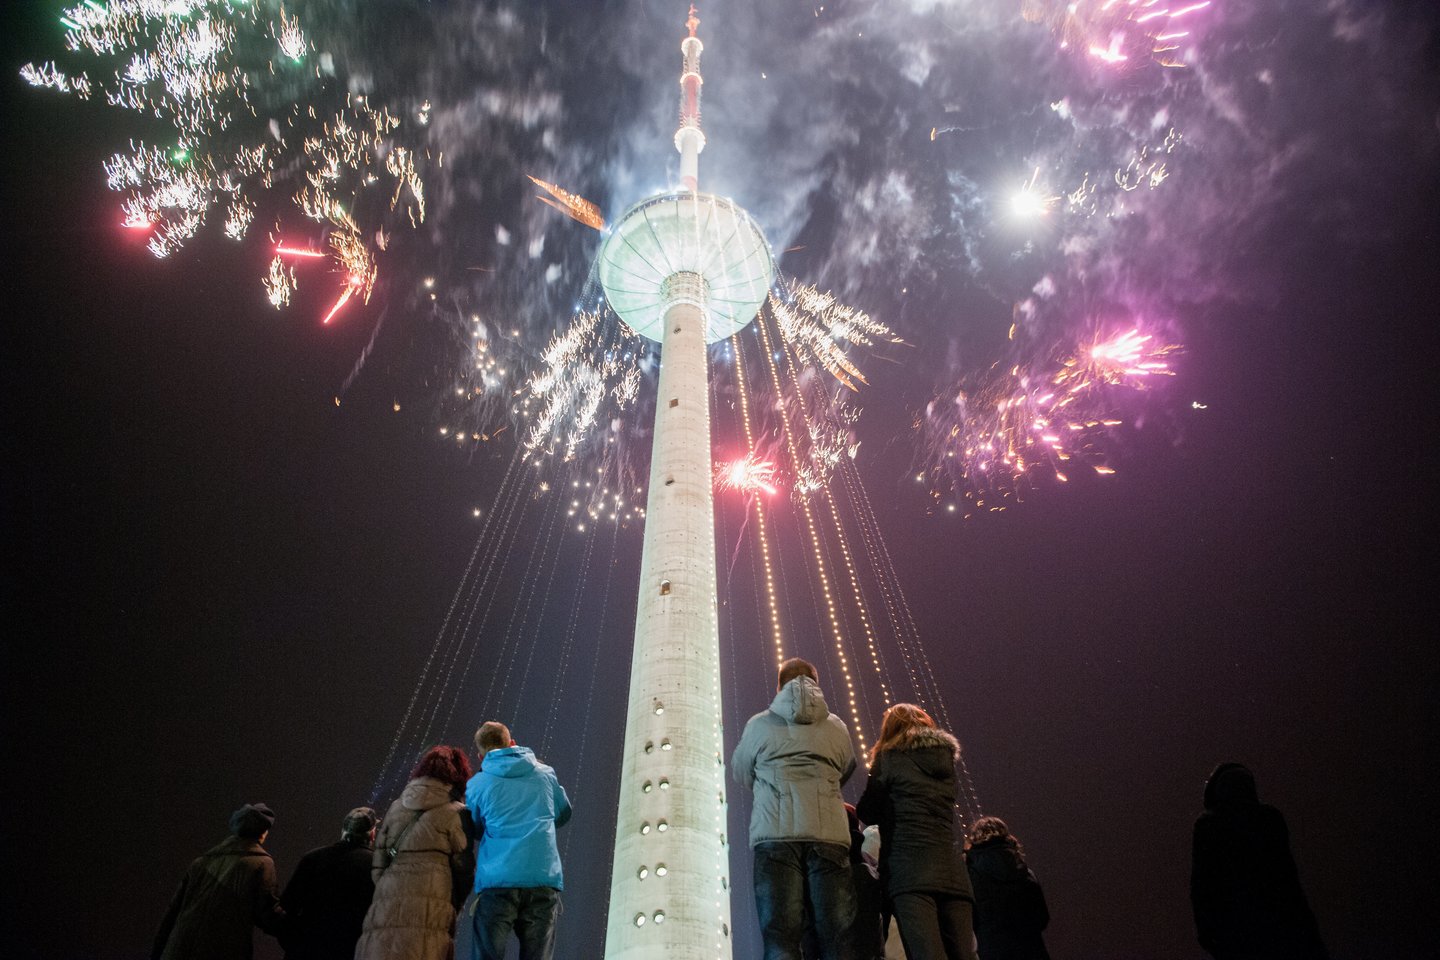 Visą gruodžio mėnesį Vilniaus TV bokštas švies įvairiomis spalvomis ir dėl suprogramuotų šviesinių dinaminių efektų vakarais primins šiaurės pašvaistę.<br>J.Stacevičiaus nuotr.